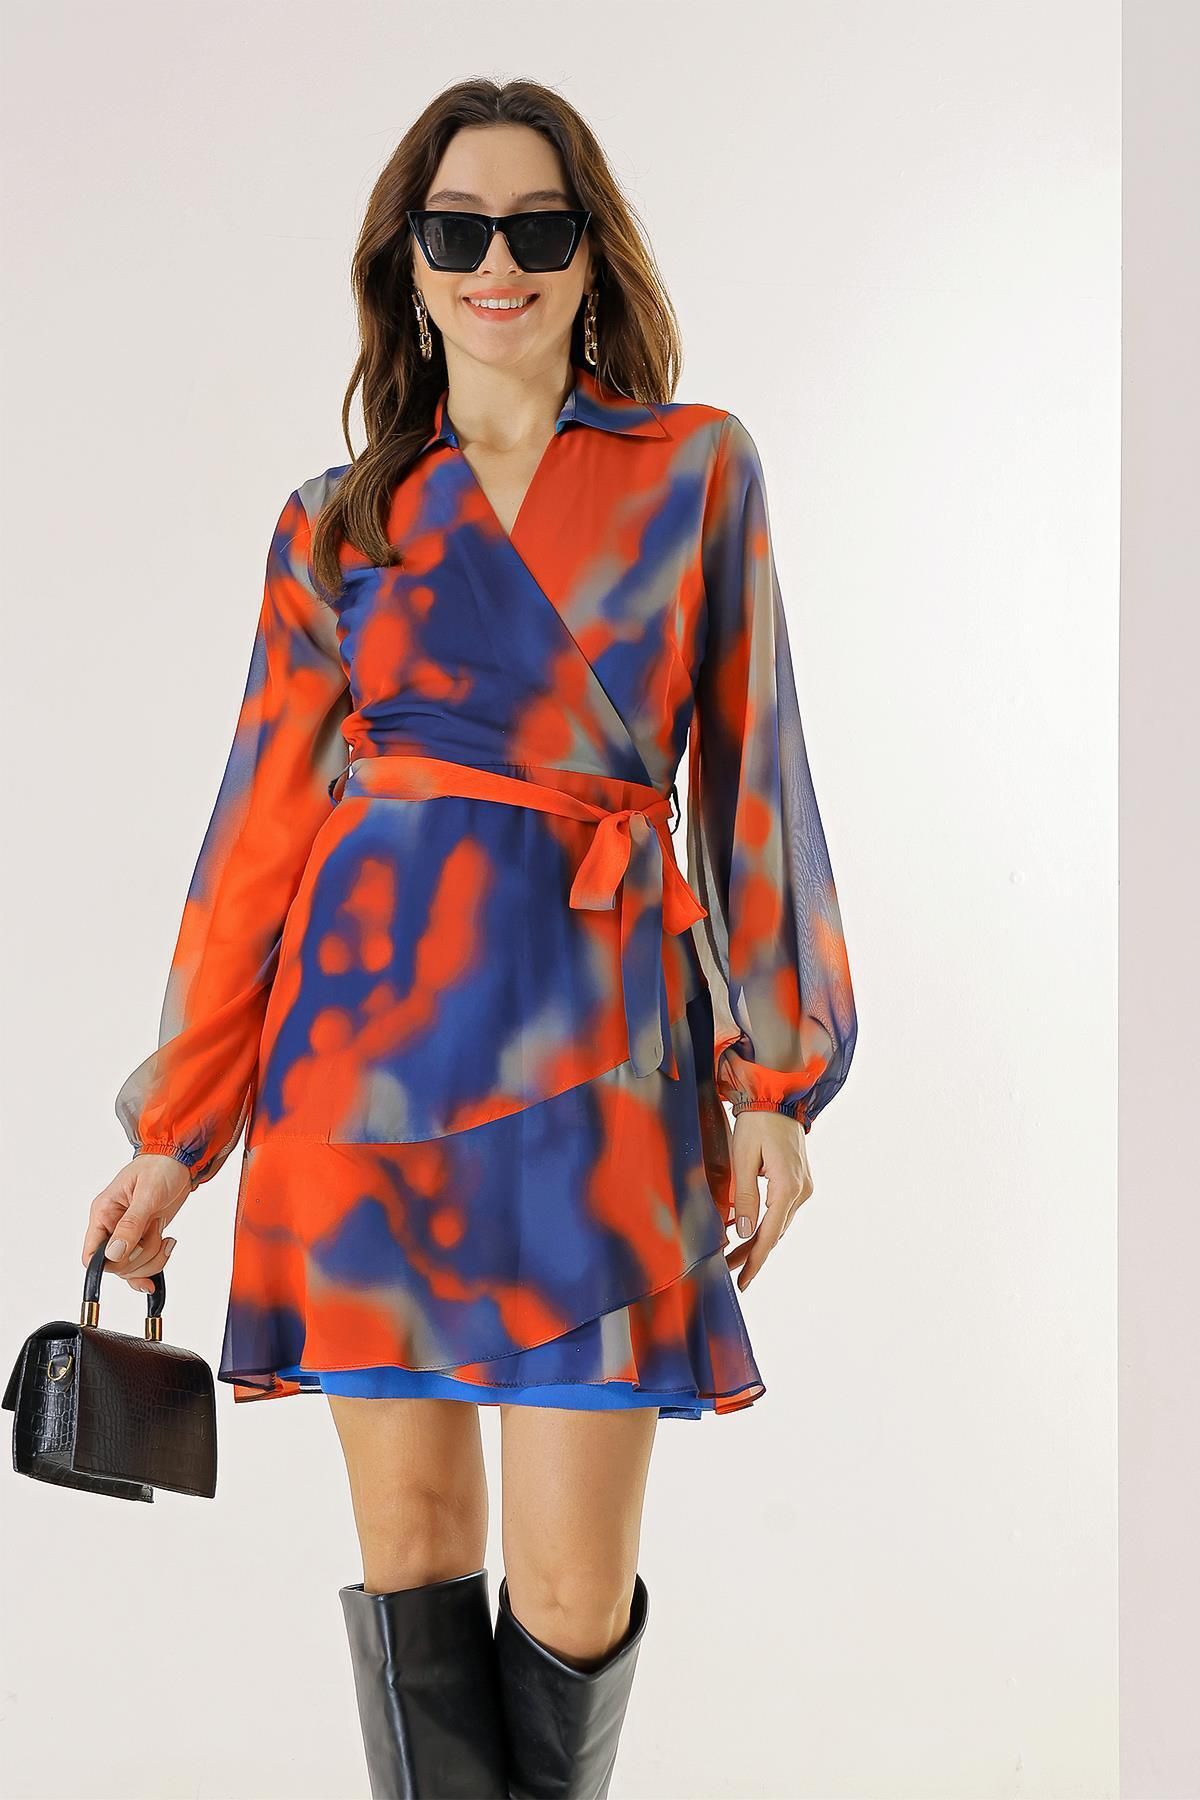 By Saygı Polo Kruvaze Yaka Astarlı Beli Kuşaklı Batik Şifon Elbise